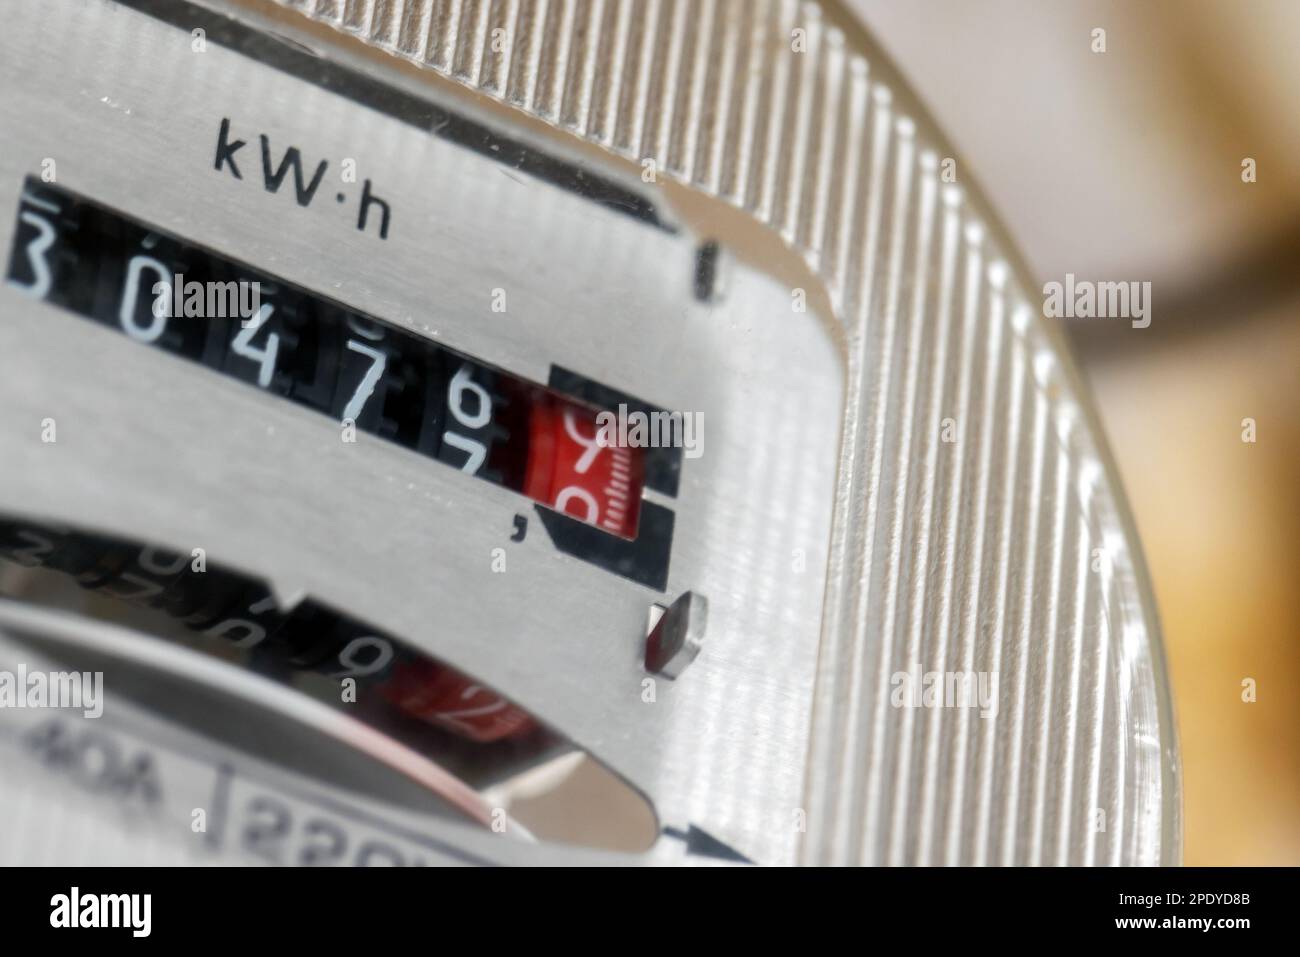 Contatore elettrico scala kW-h, foto ravvicinata Foto Stock